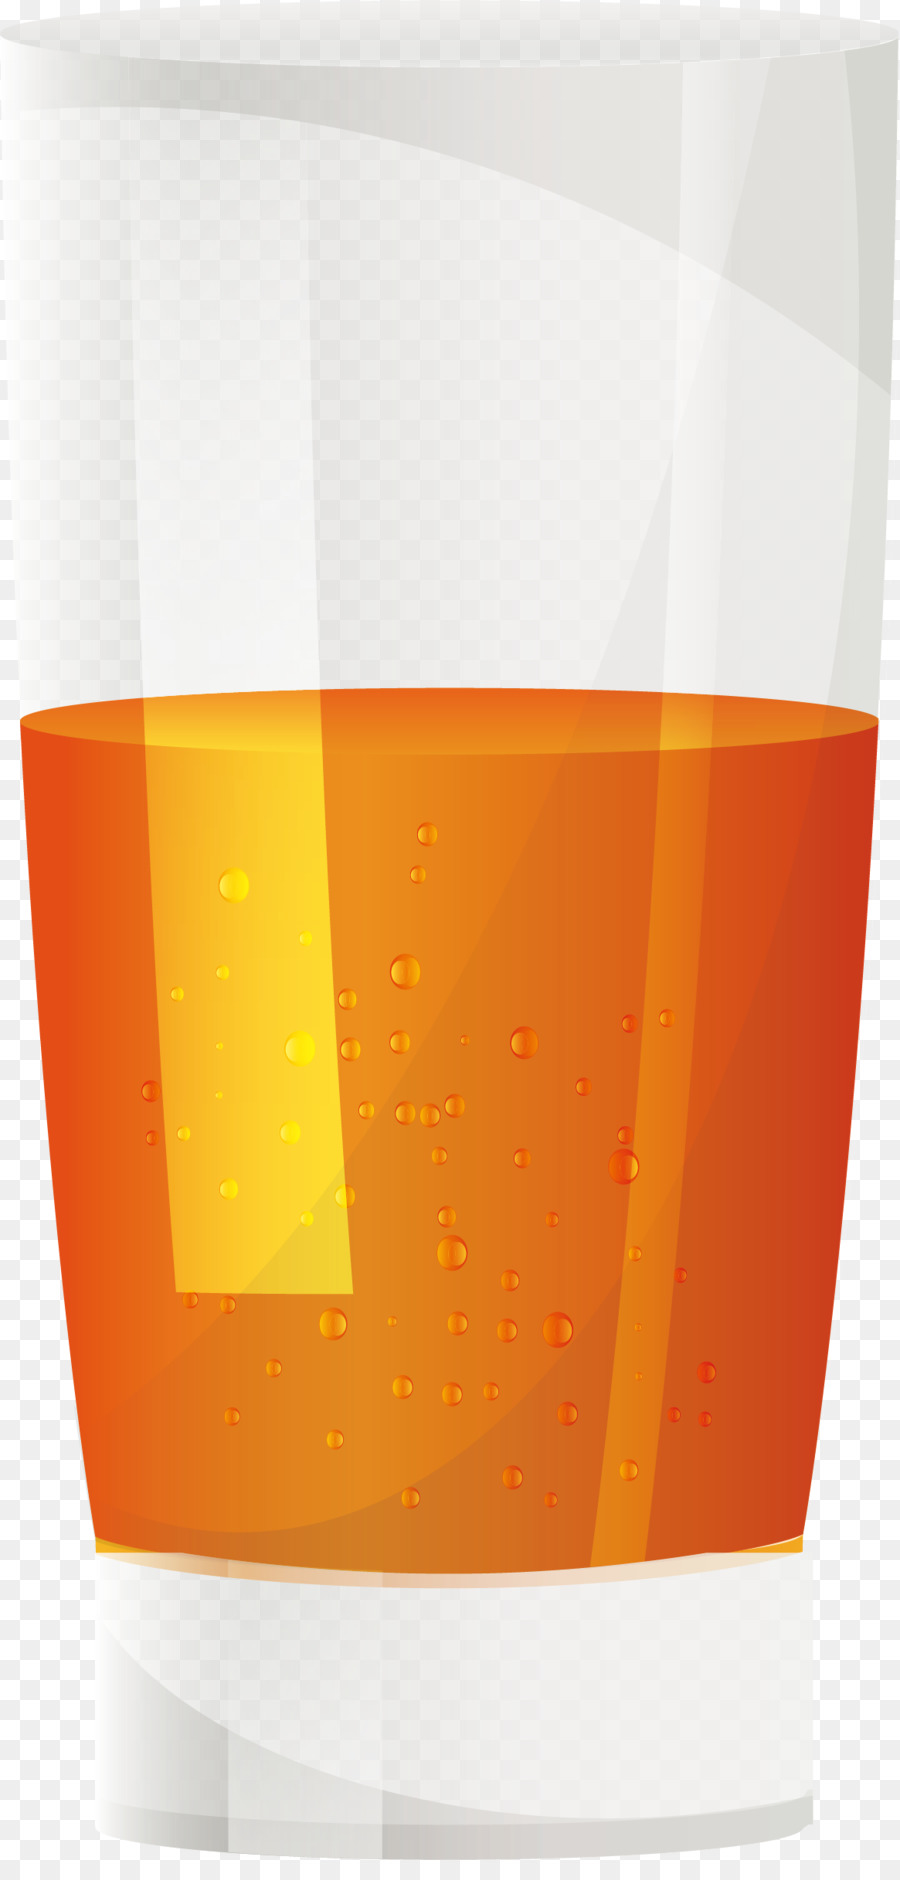 Nước cam Mềm uống Fresca - Một nửa cốc nước cam